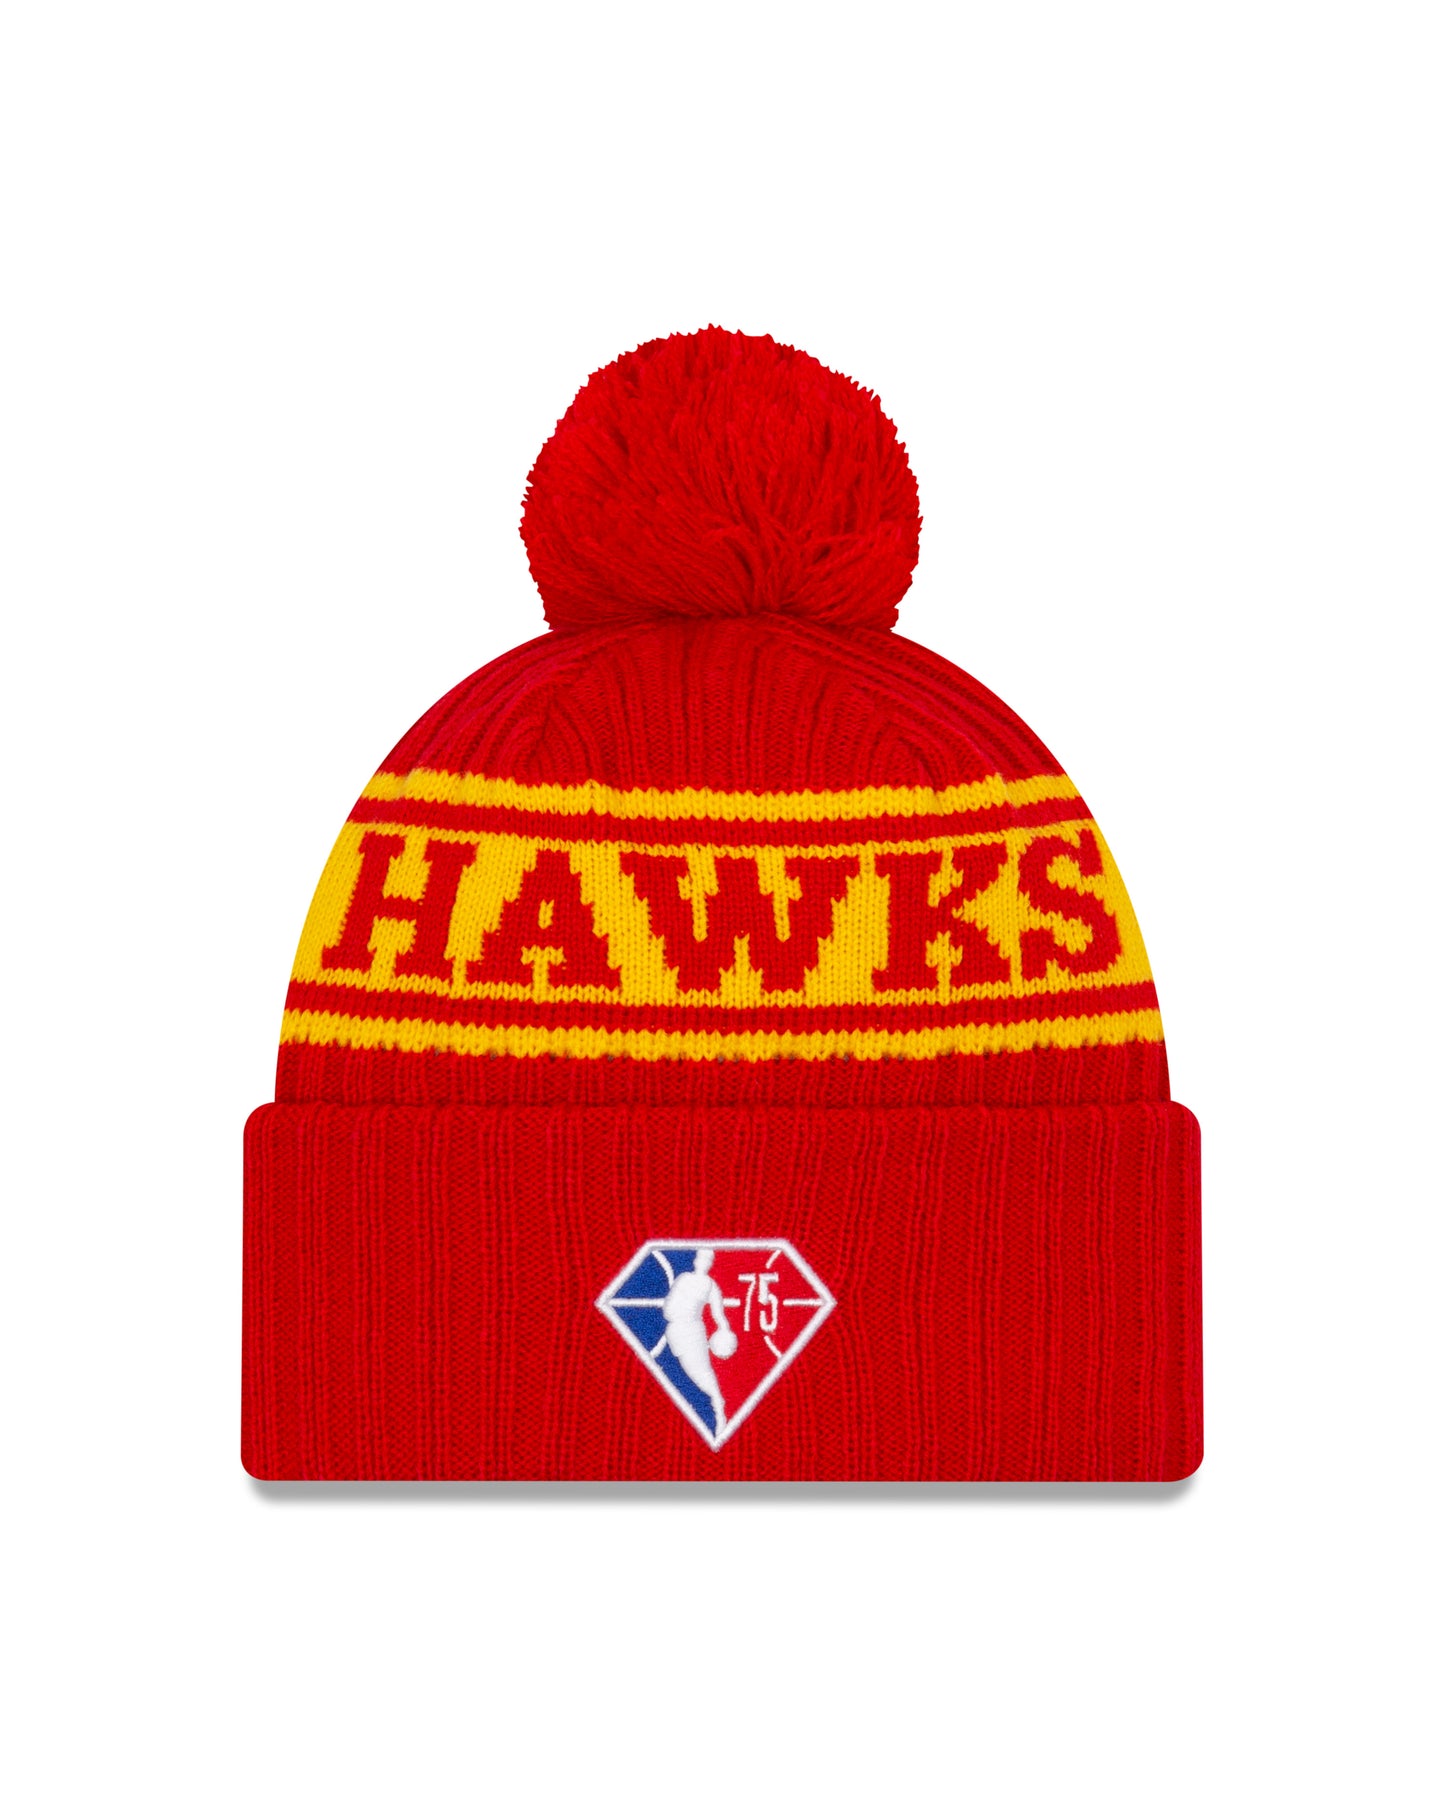 Atlanta Hawks New Era Draft Knit Hat